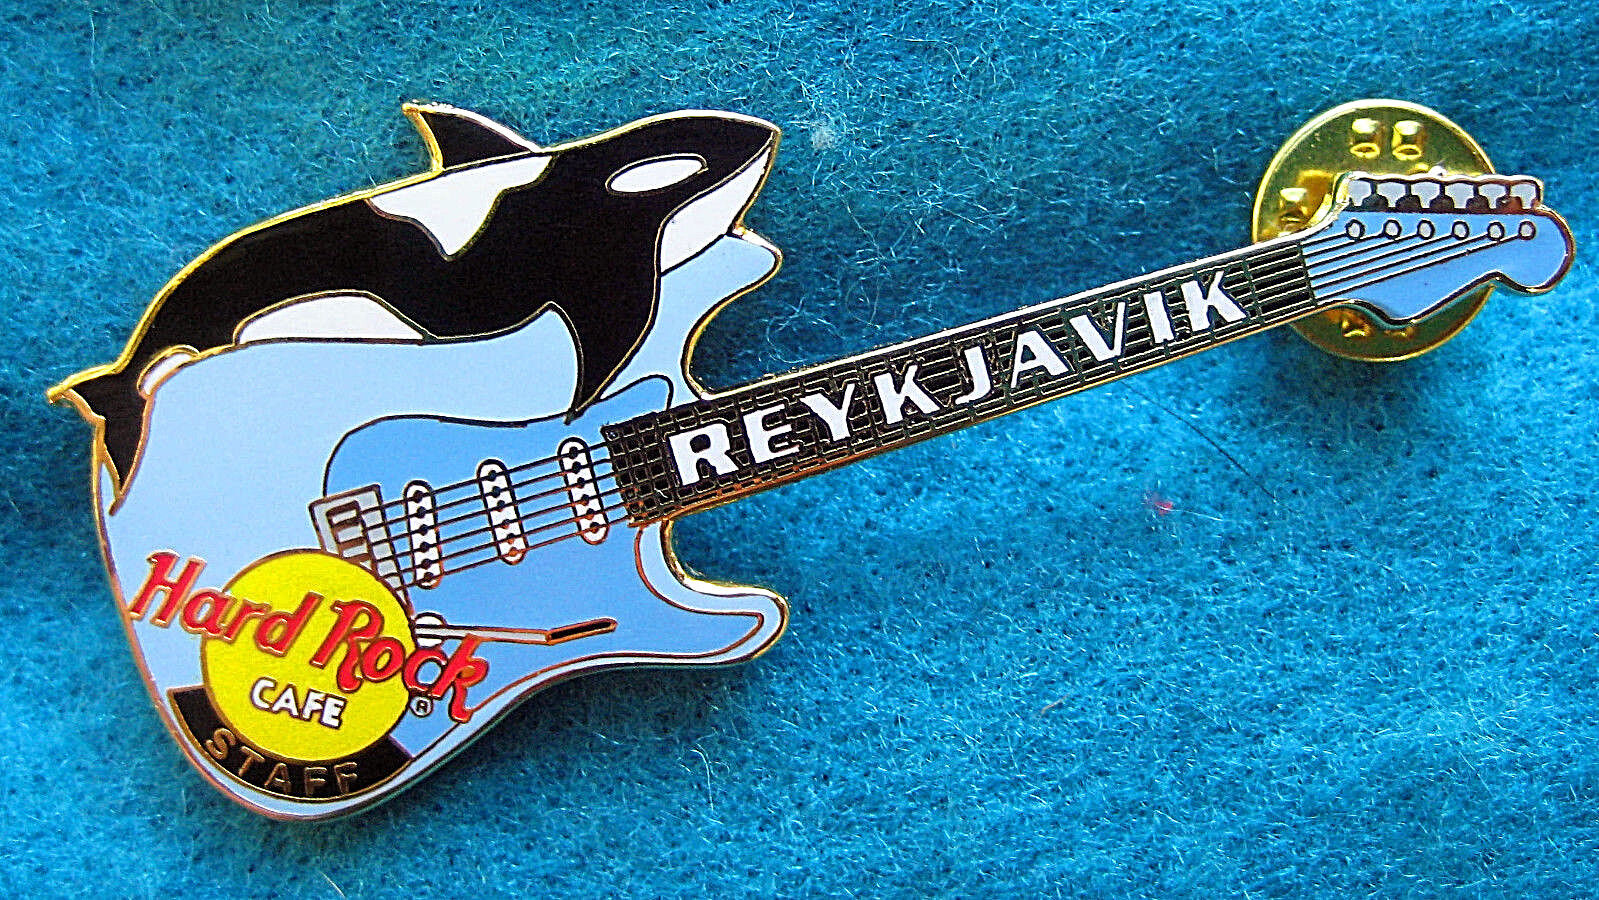 REYKJAVIK 2000 STAFF BLUE ORCA KILLER WHALE FENDER GUITAR Hard Rock Cafe PIN MIP